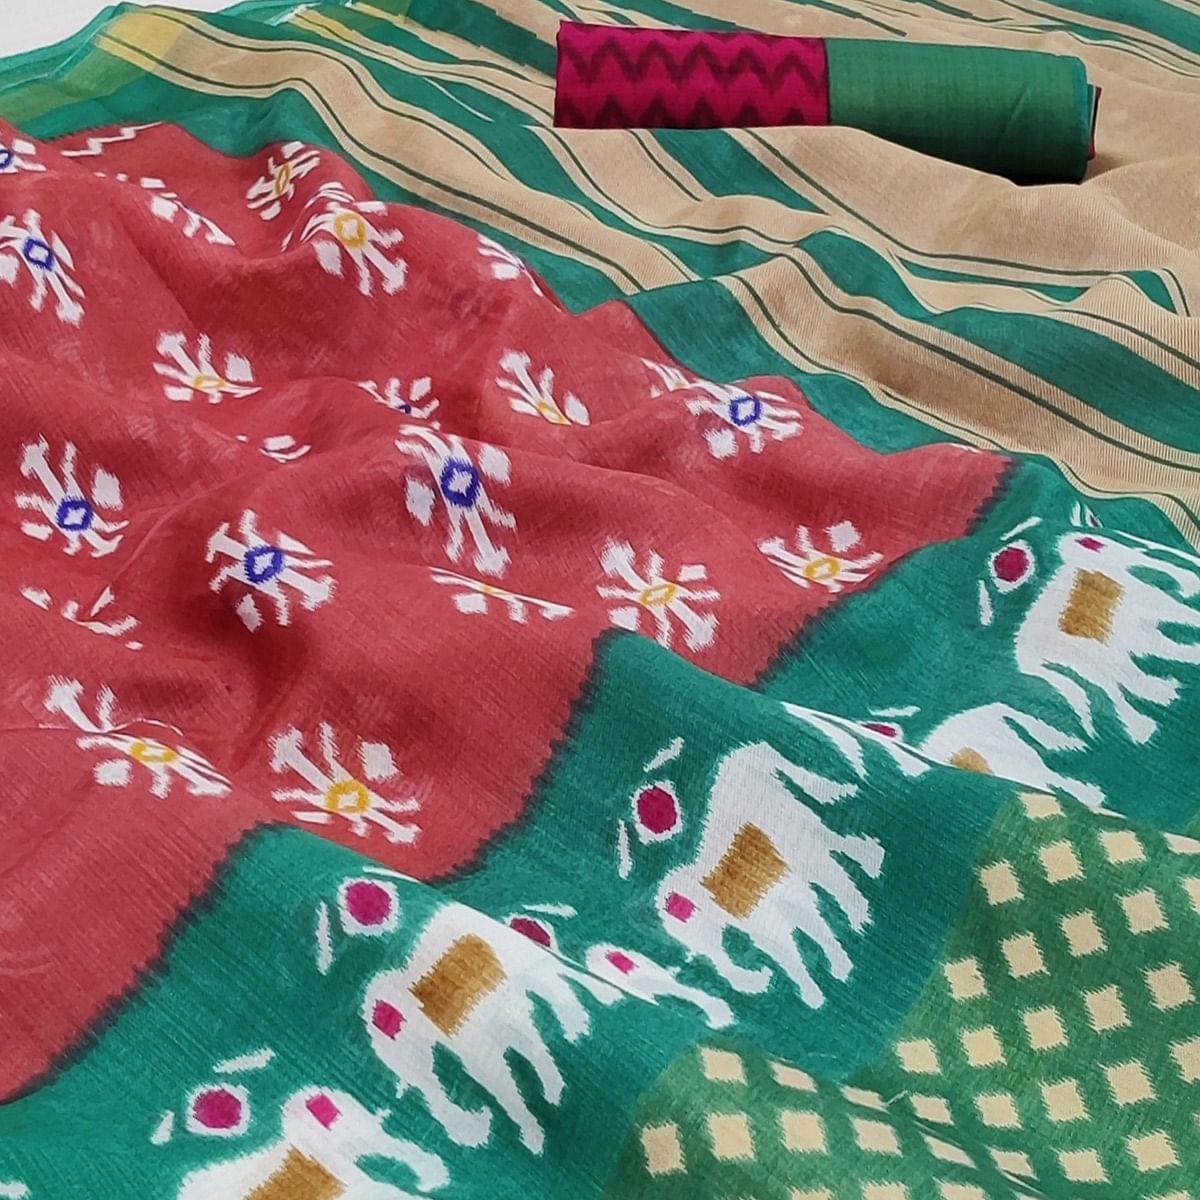 Multicolored Casual Wear Printed Cotton Saree With Jari Border - Peachmode